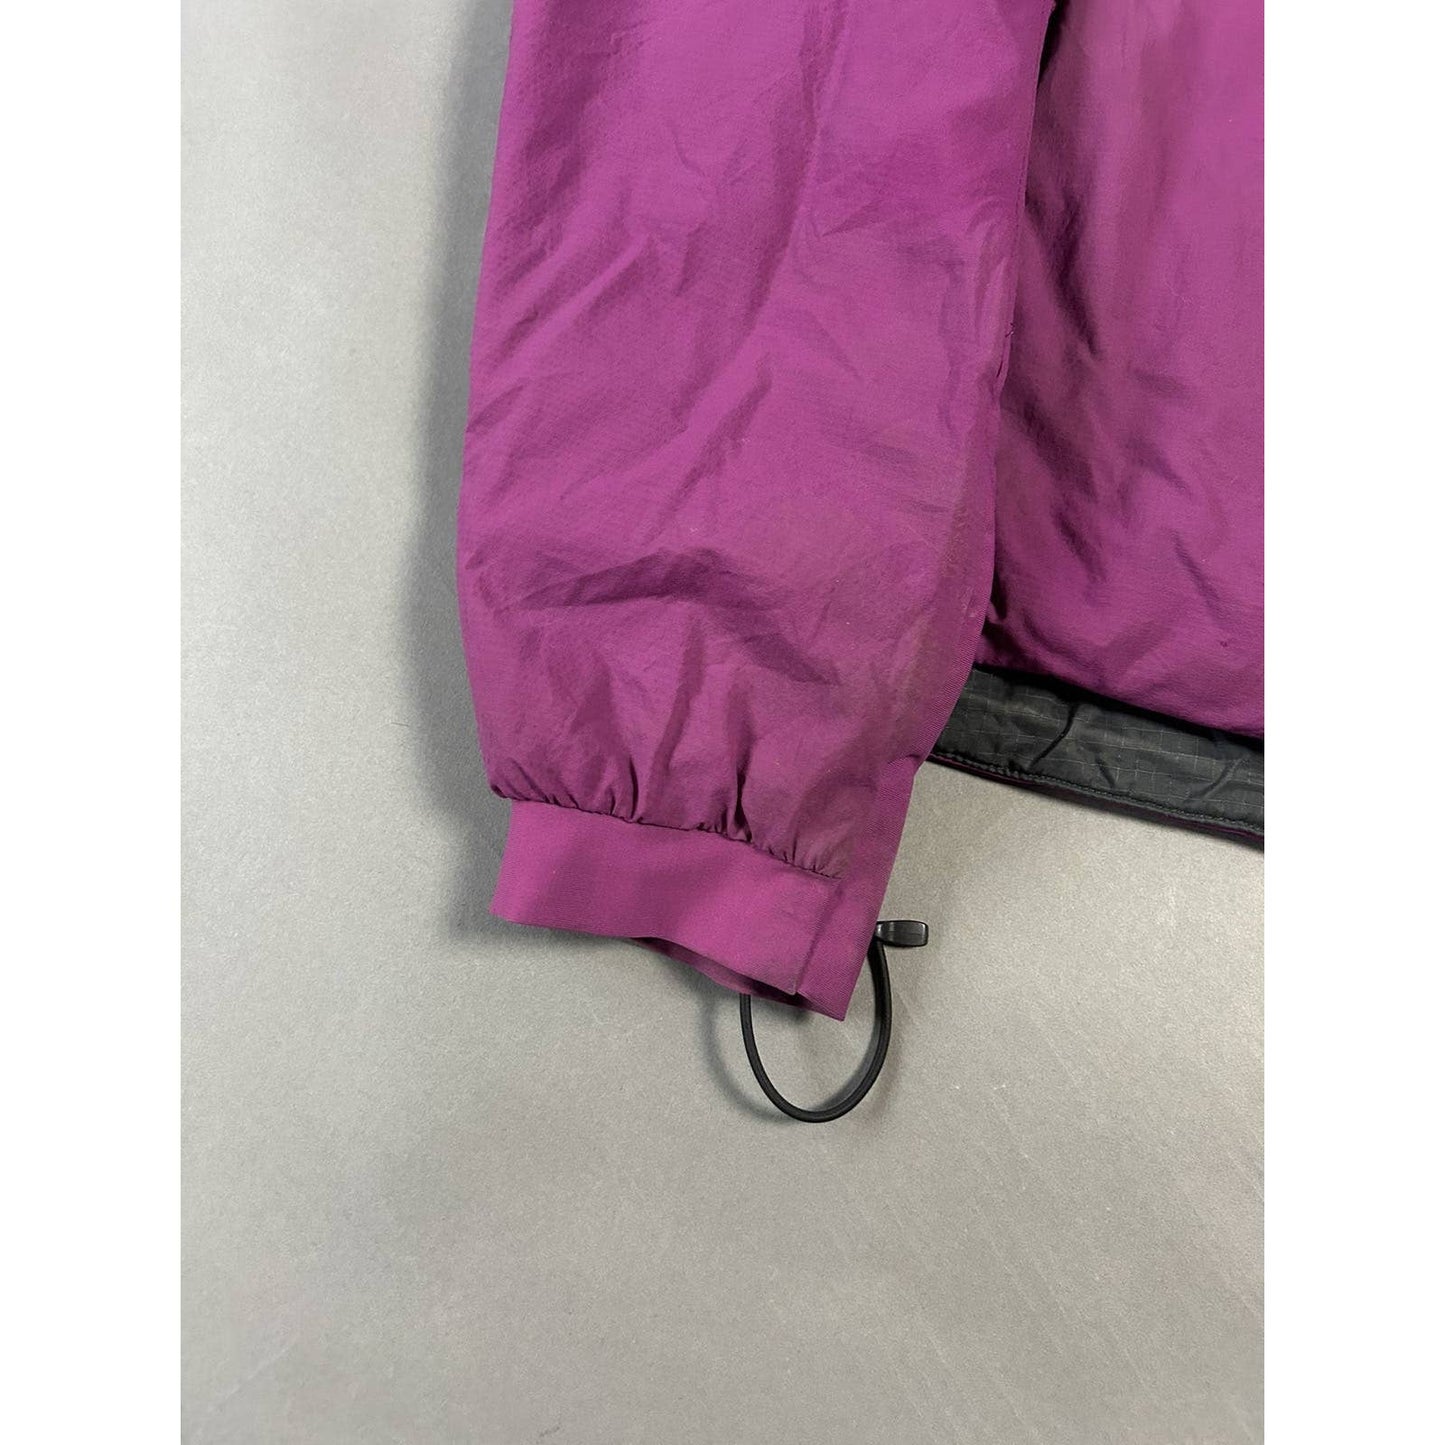 Arc’teryx jacket pink Atom LT hoody